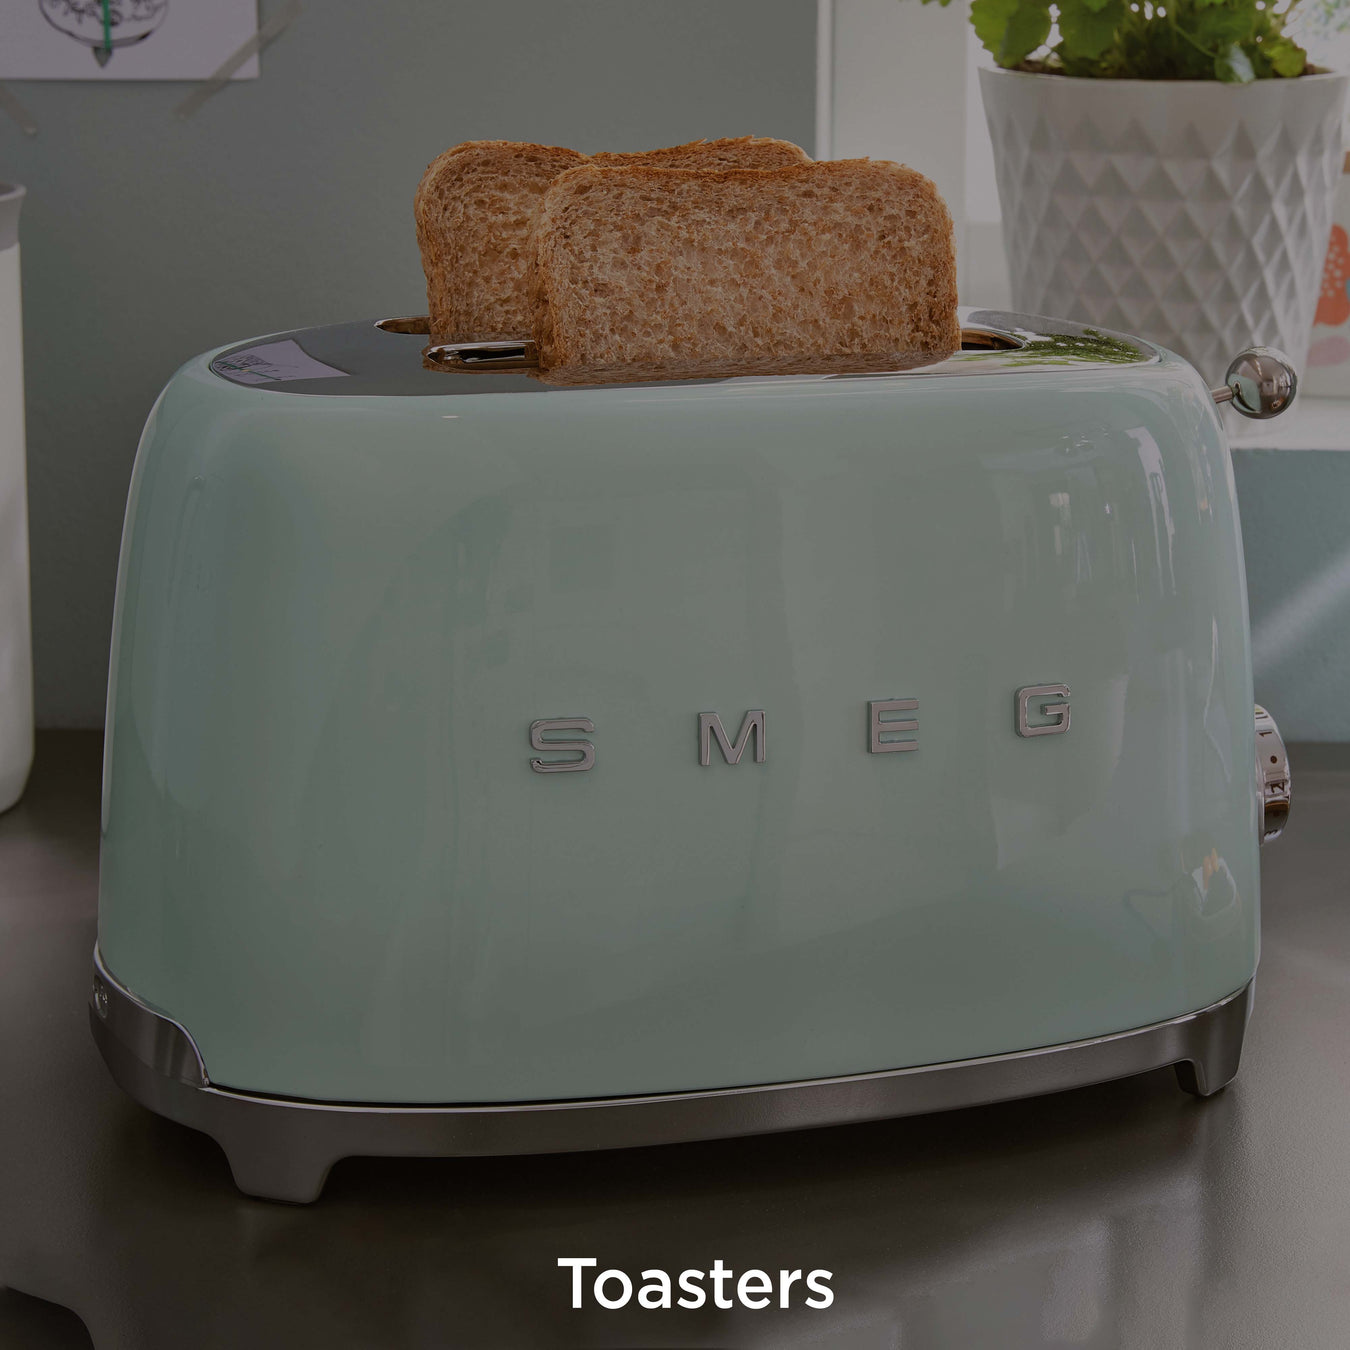 Smeg Toasters